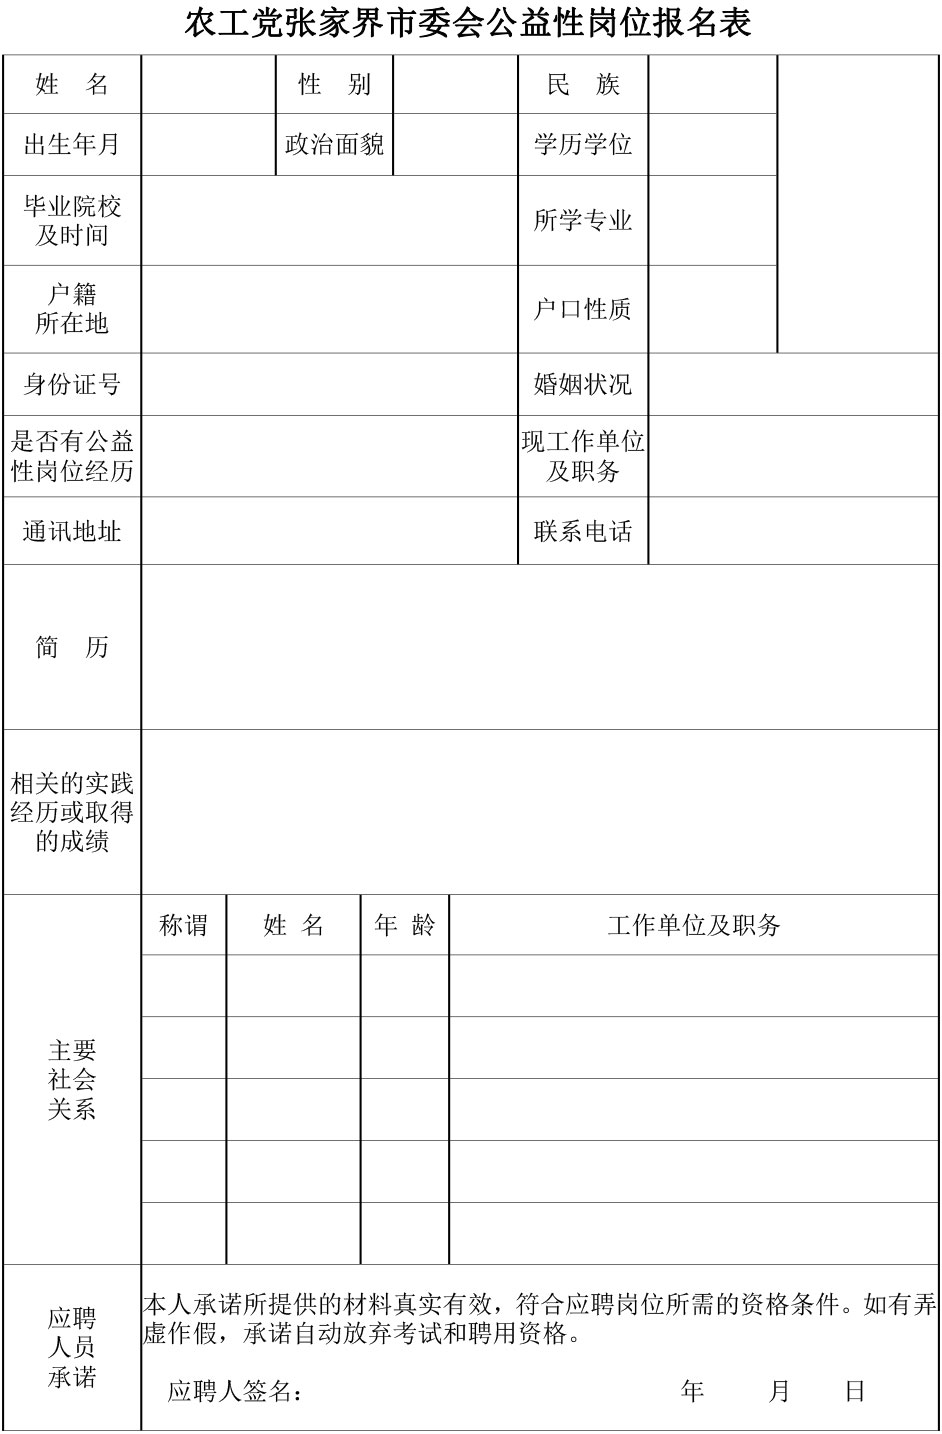 农工党张家界市委会招聘公益性岗位工作人员公告.jpg